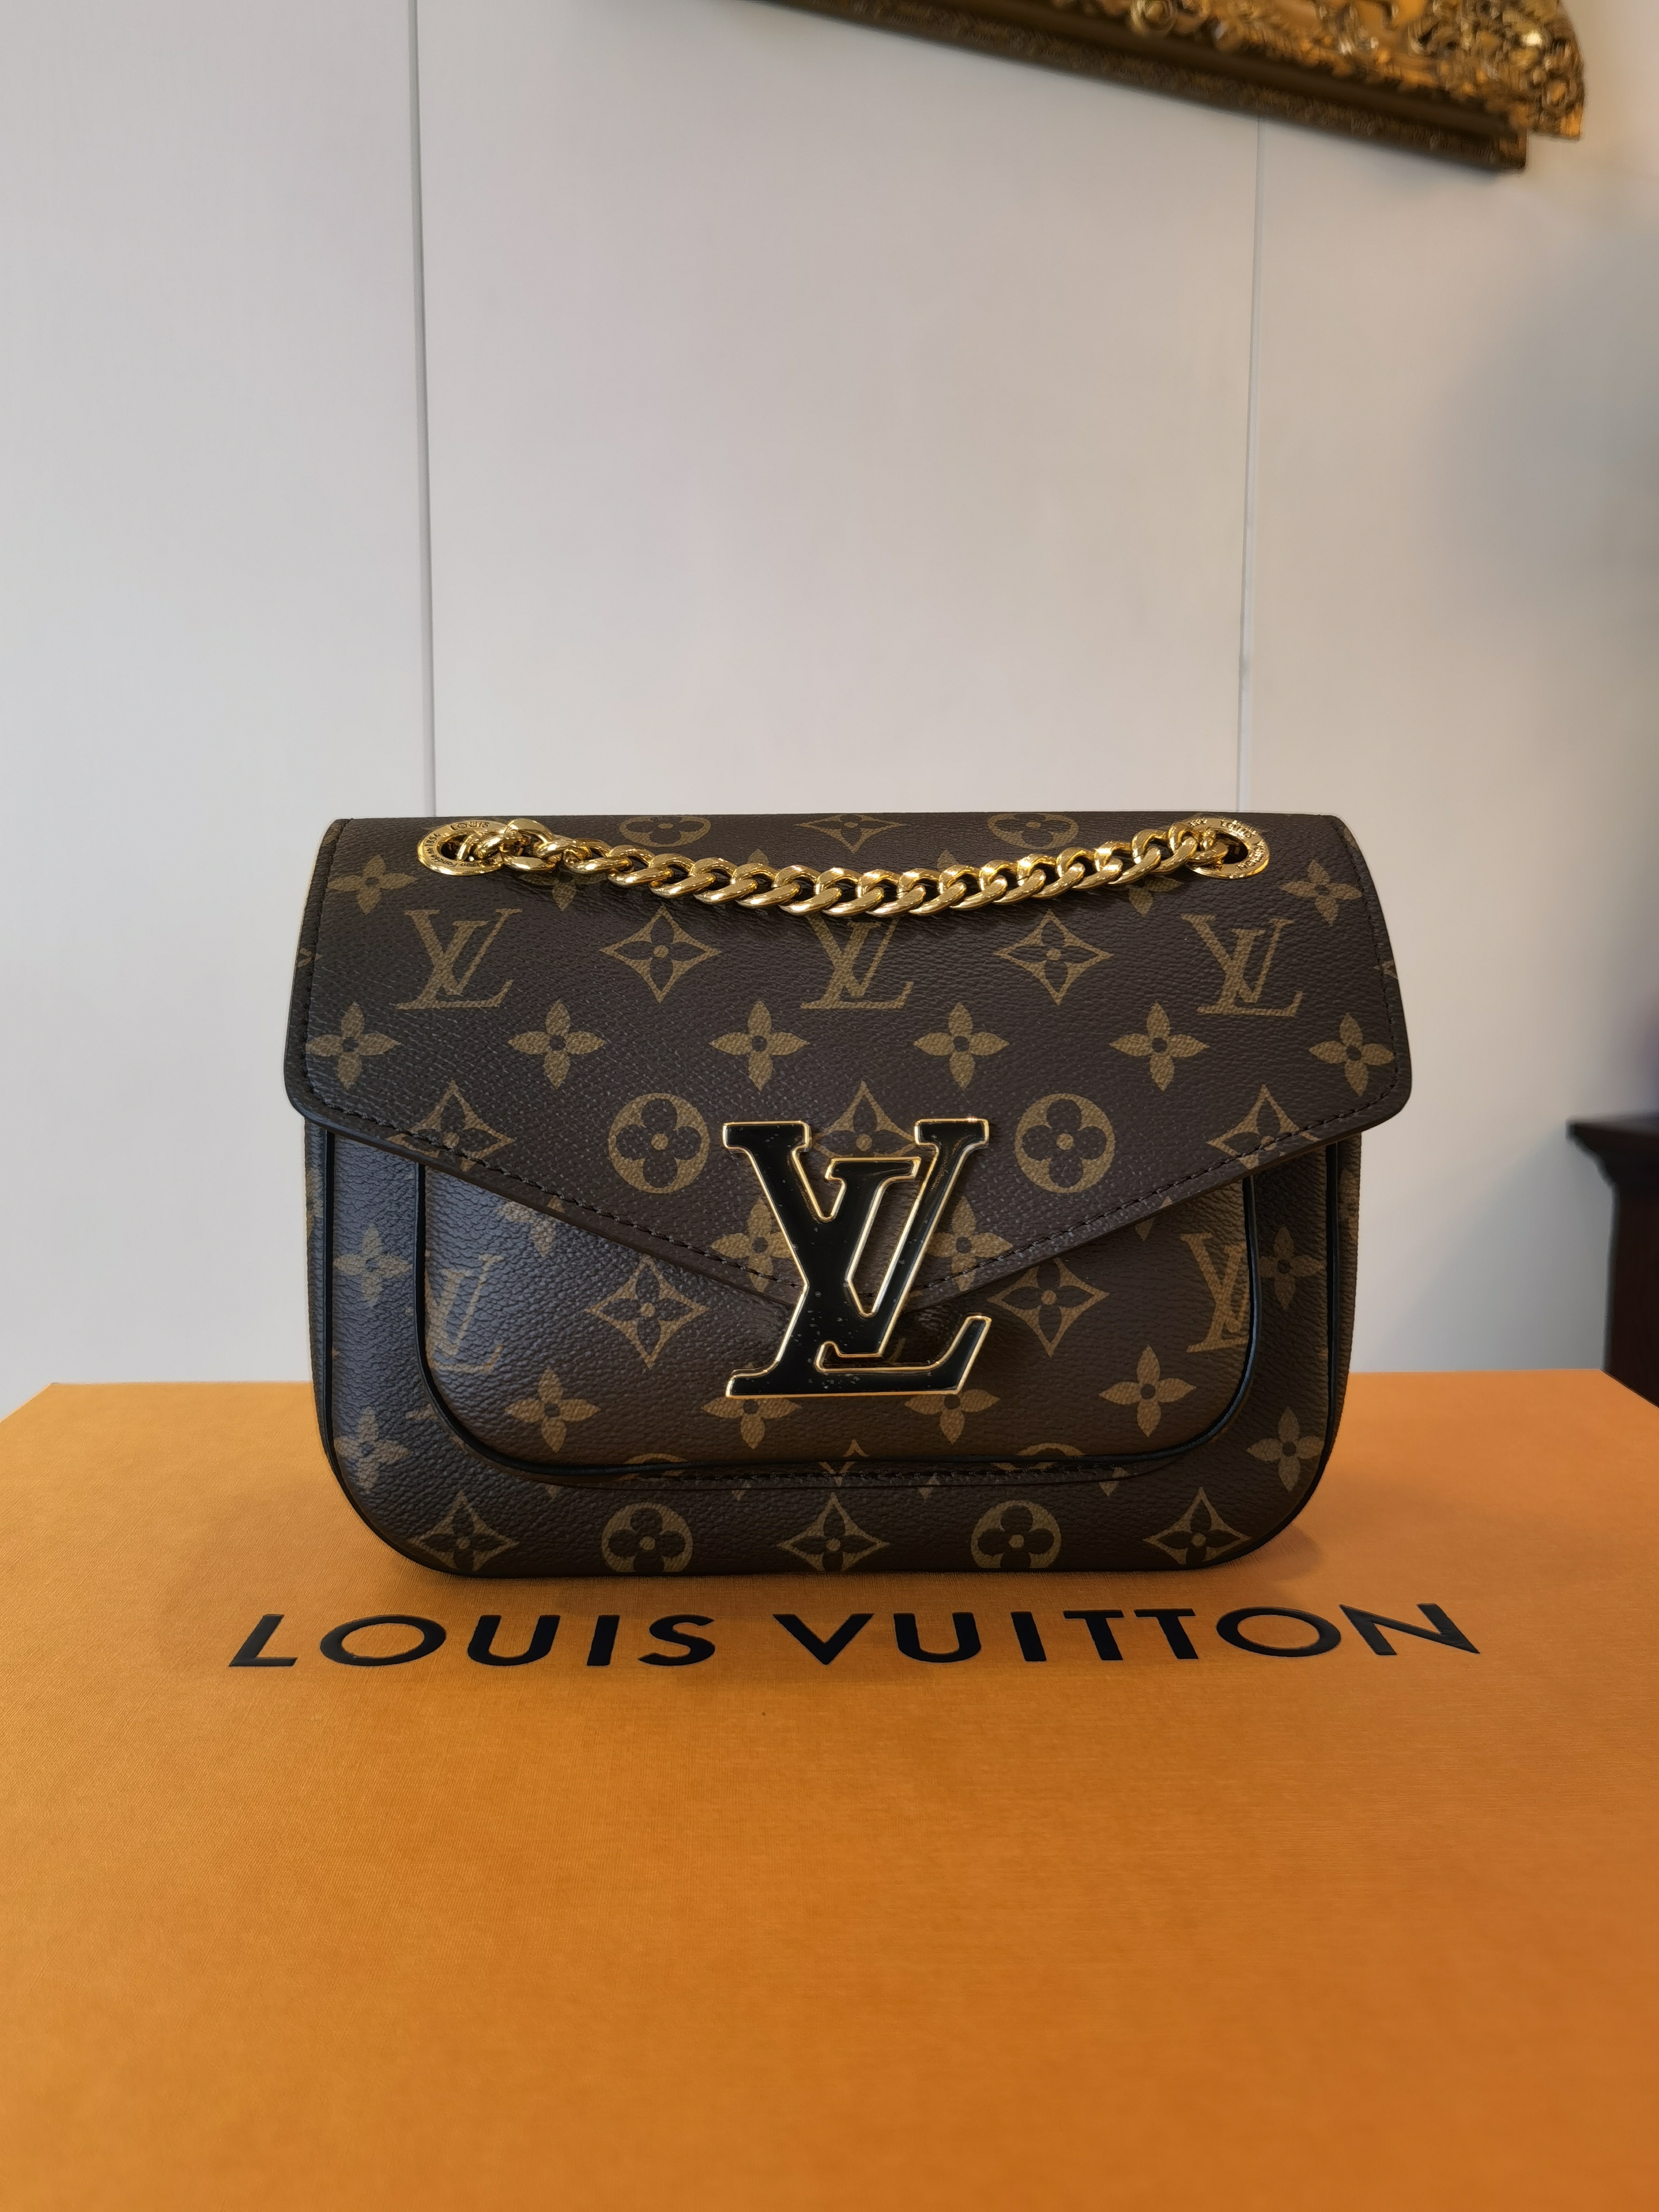 Shop Louis Vuitton MONOGRAM Passy (M45592) by luxurysuite